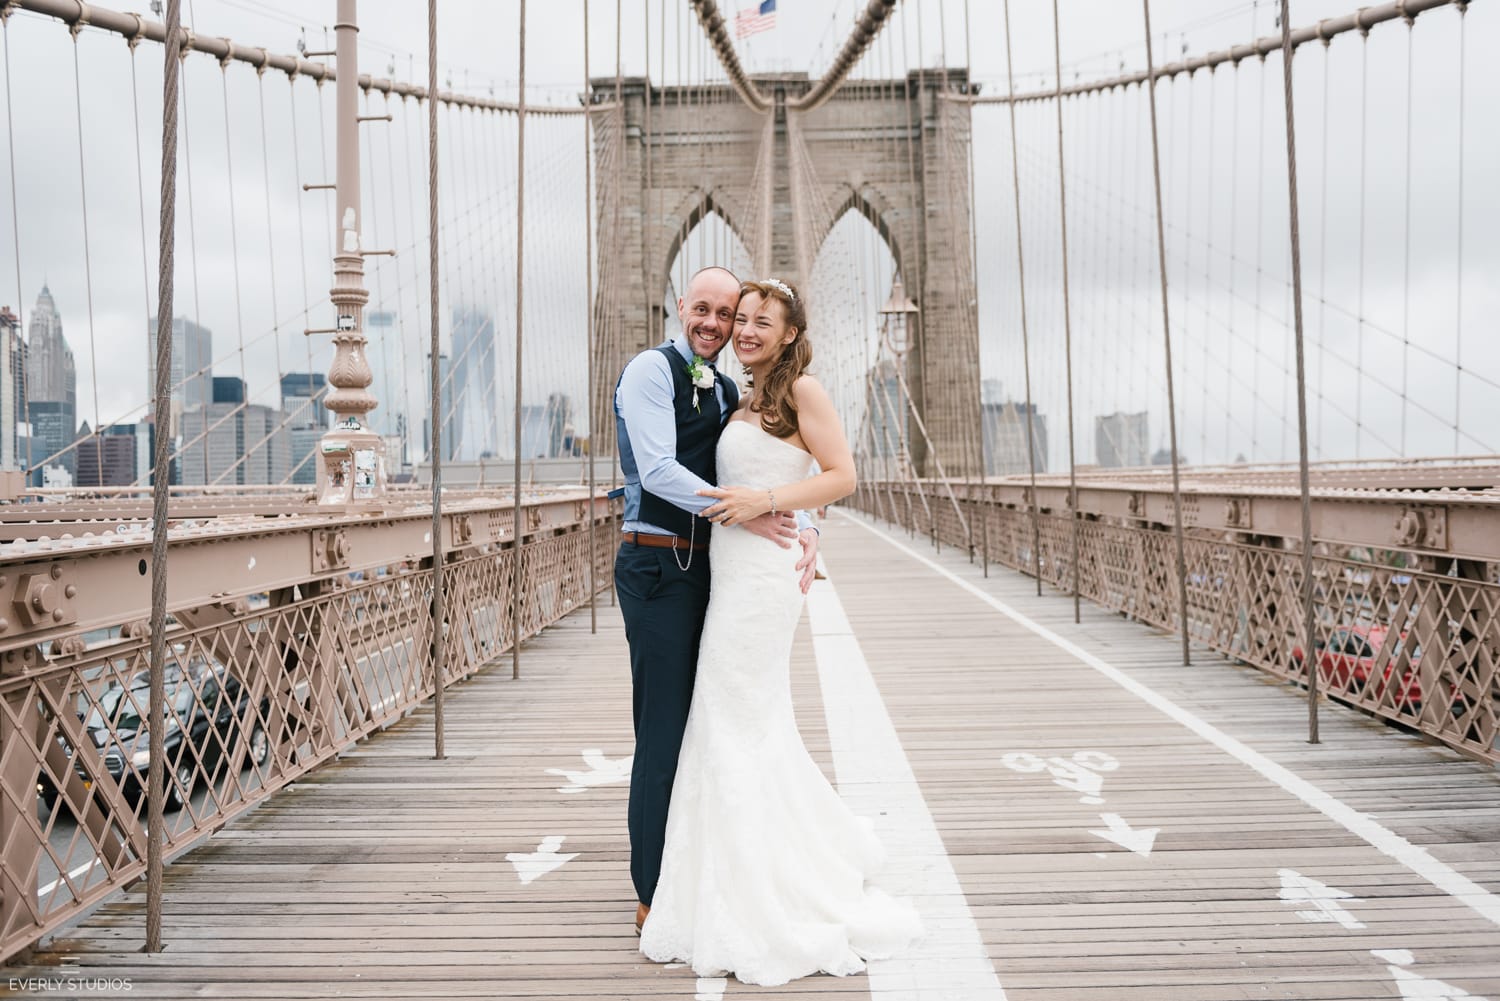 Brooklyn Bridge wedding photos in Brooklyn. Photos by Brooklyn wedding photographer Everly Studios, www.everlystudios.com